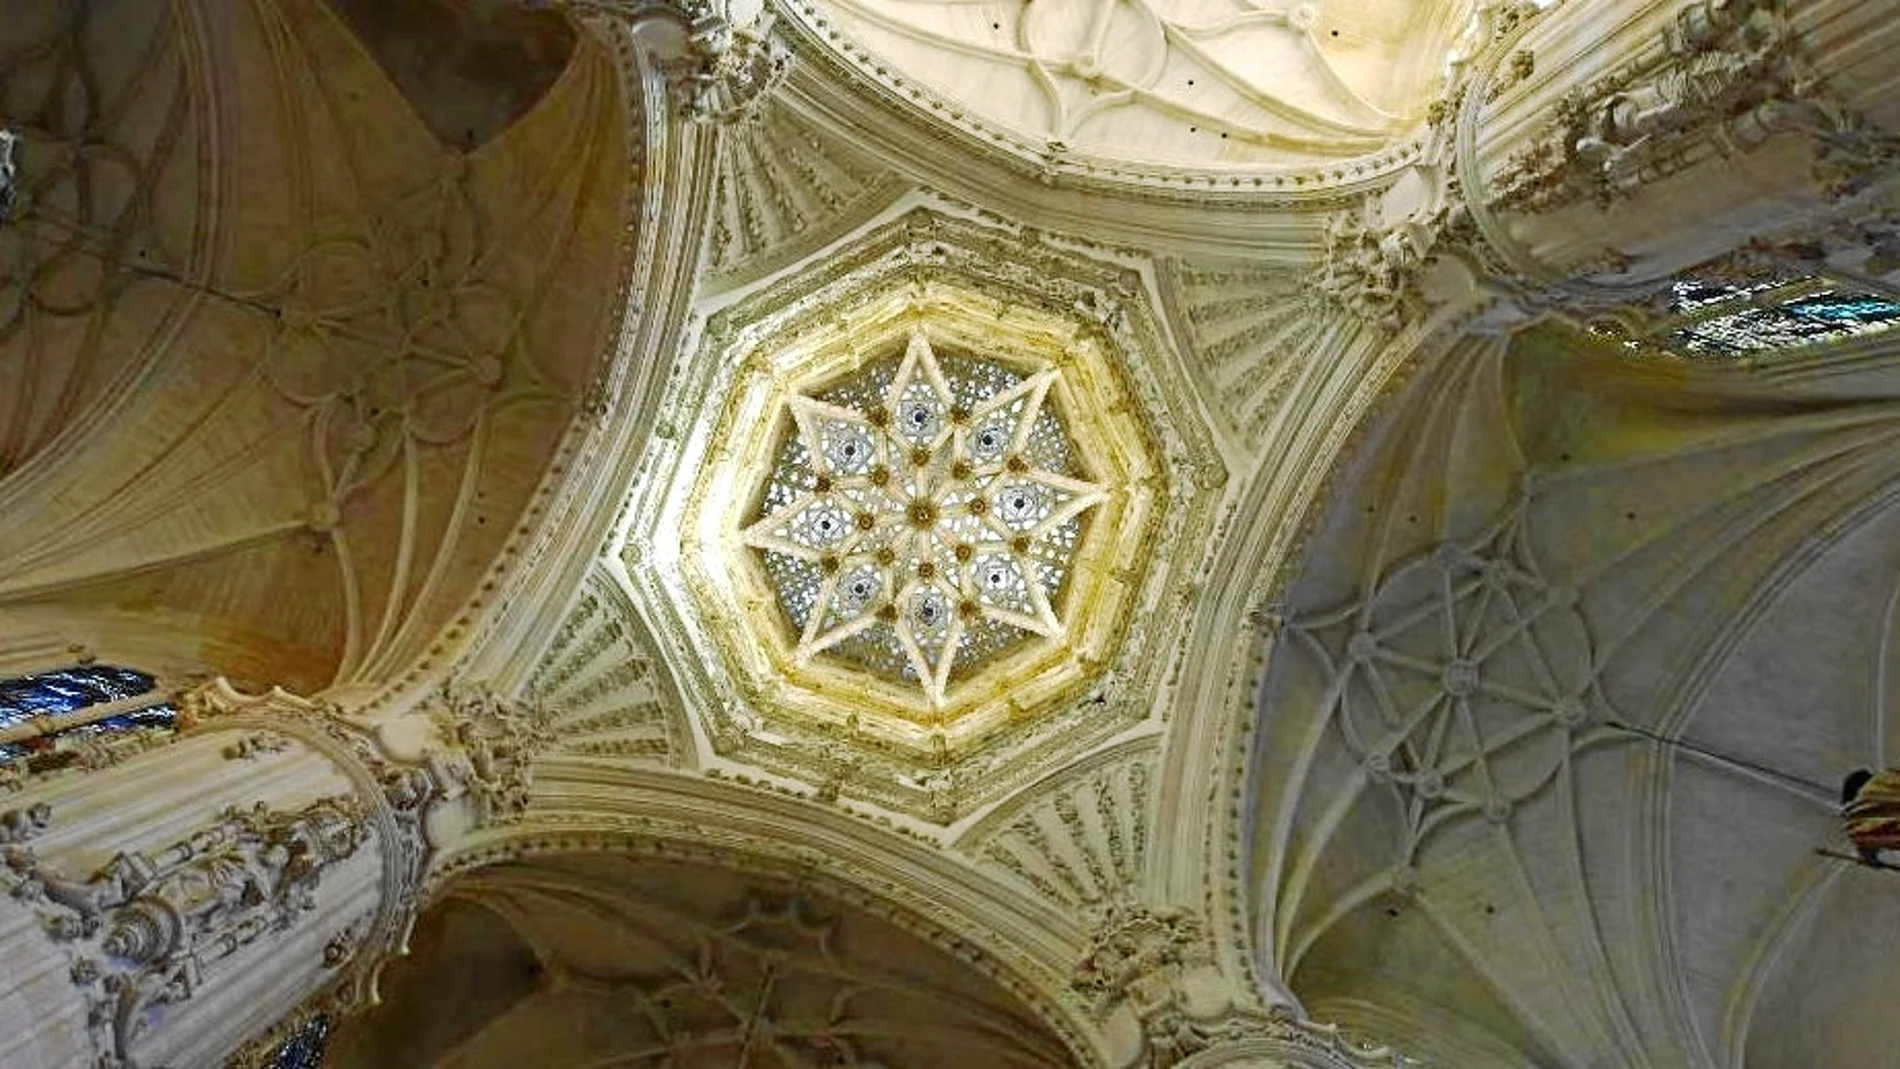 El interior de la catedral es de una enorme belleza y posee numerosas capillas ricamente ornamentadas